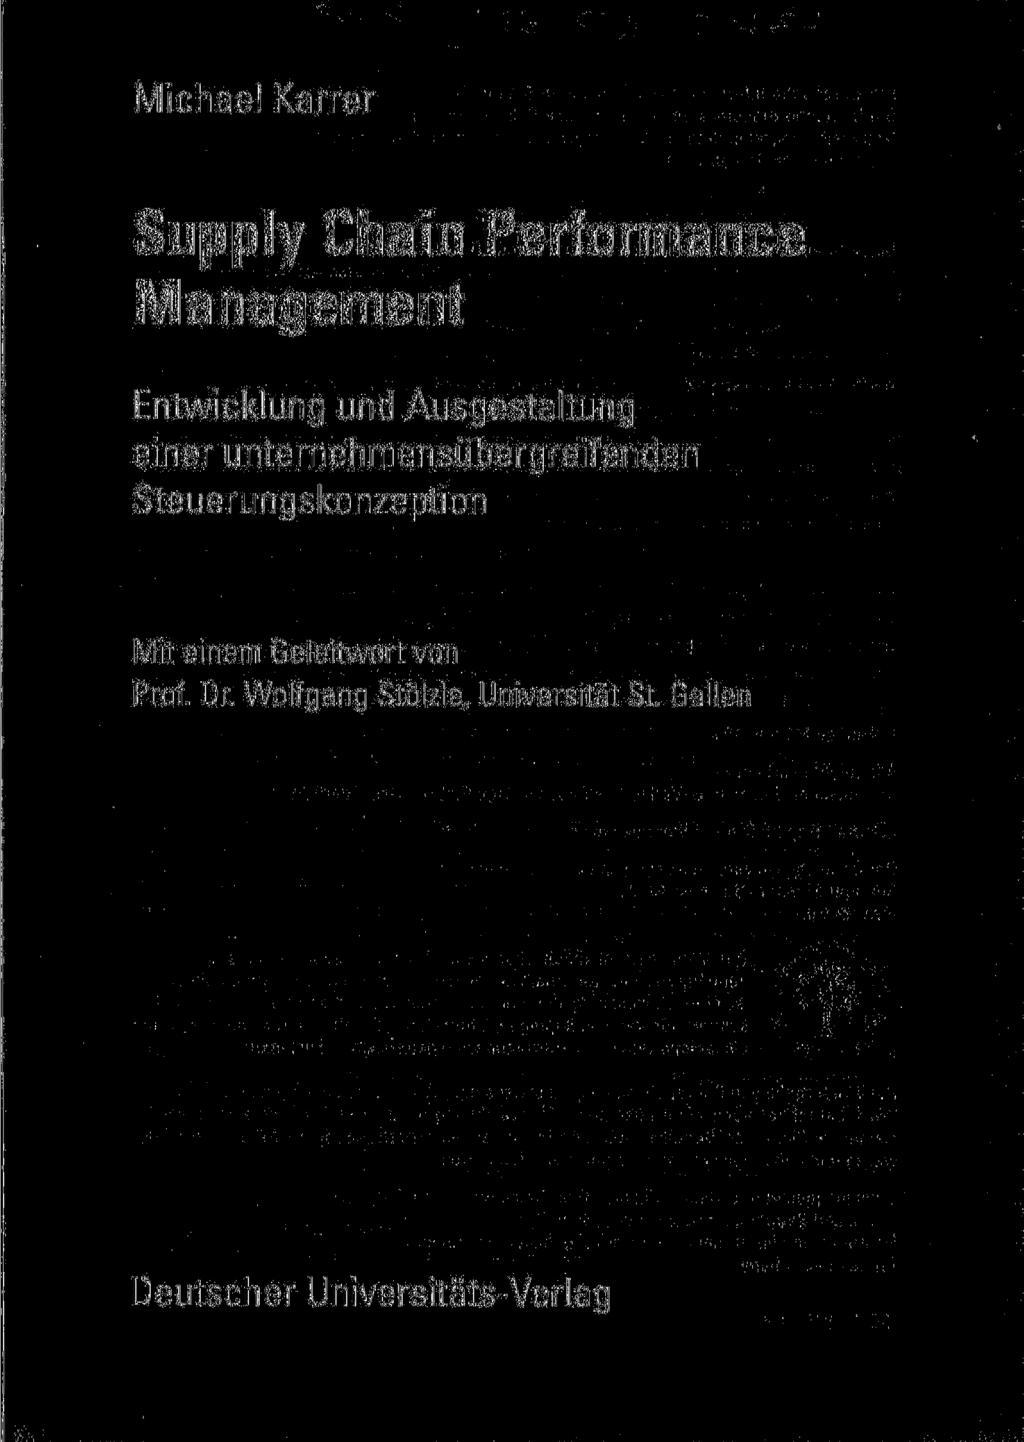 Michael Karrer Supply Chain Performance Management Entwicklung und Ausgestaltung einer unternehmensübergreifenden